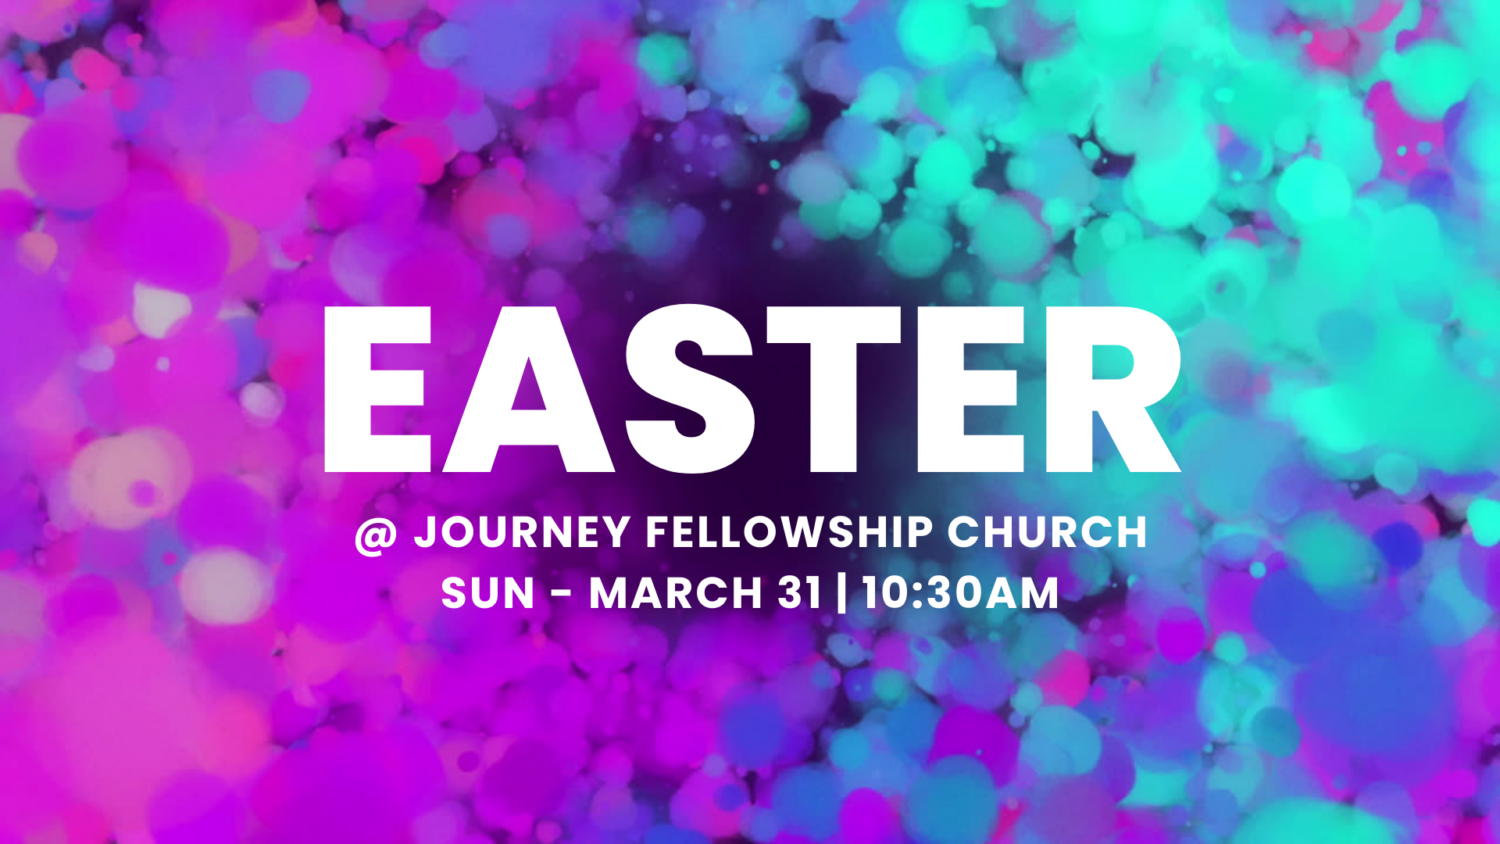 Journey Fellowship Church Denton TX » Easter & Egg Hunt